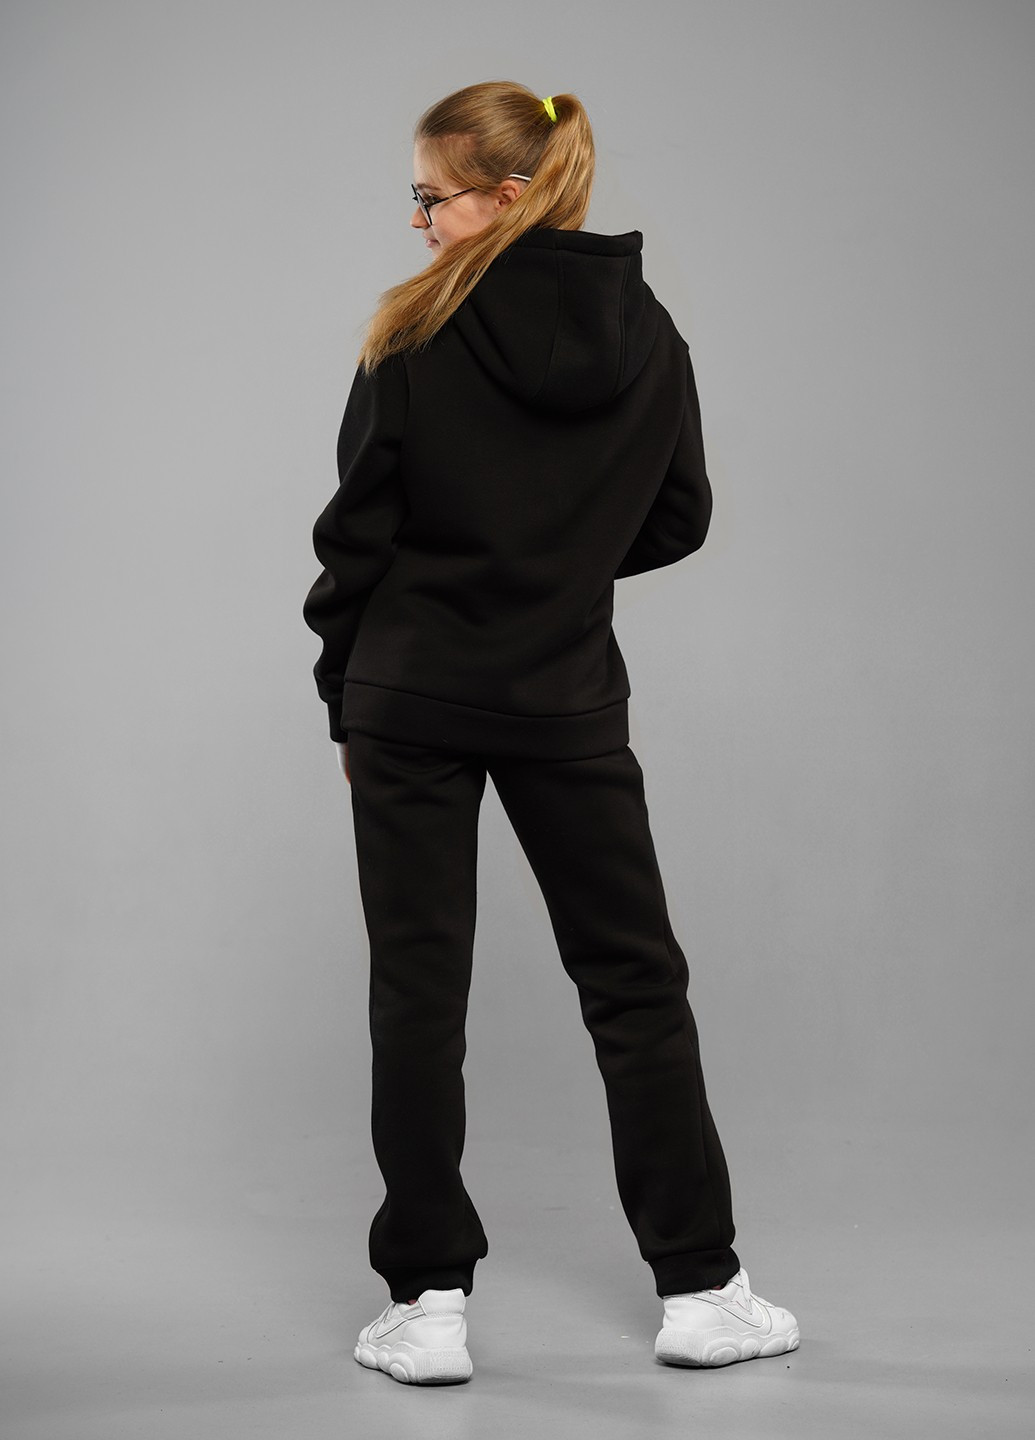 Черный зимний зимний спортивный костюм брючный Tiaren Айрис